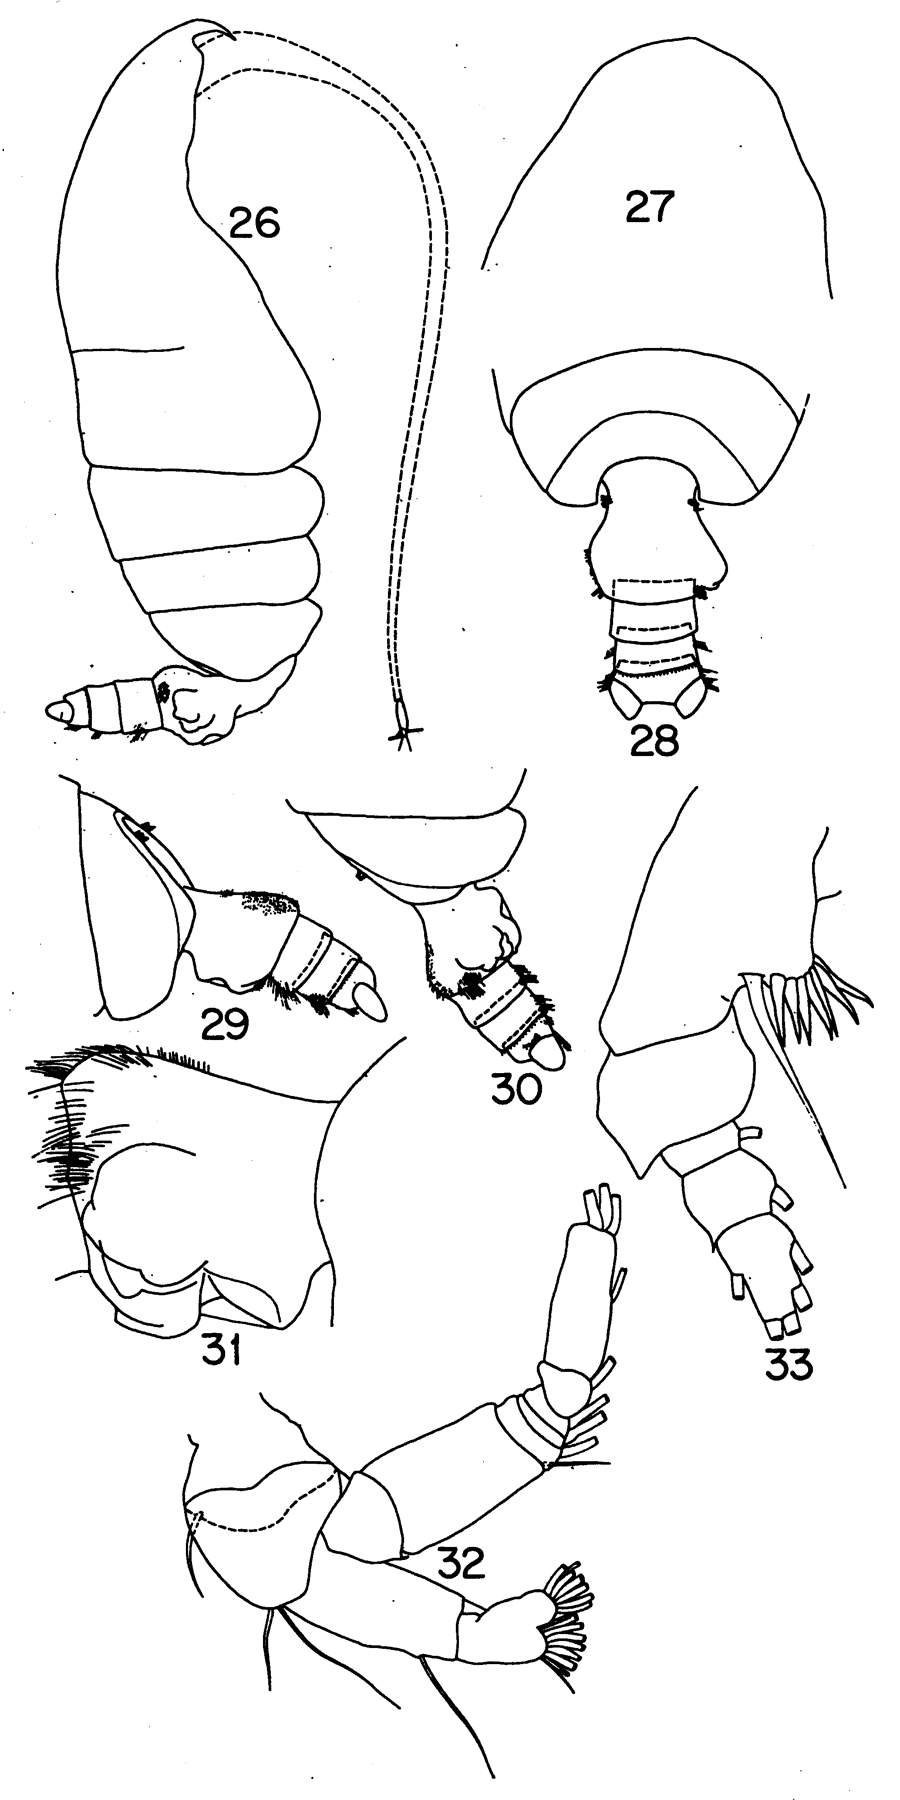 Espce Pseudochirella mawsoni - Planche 15 de figures morphologiques